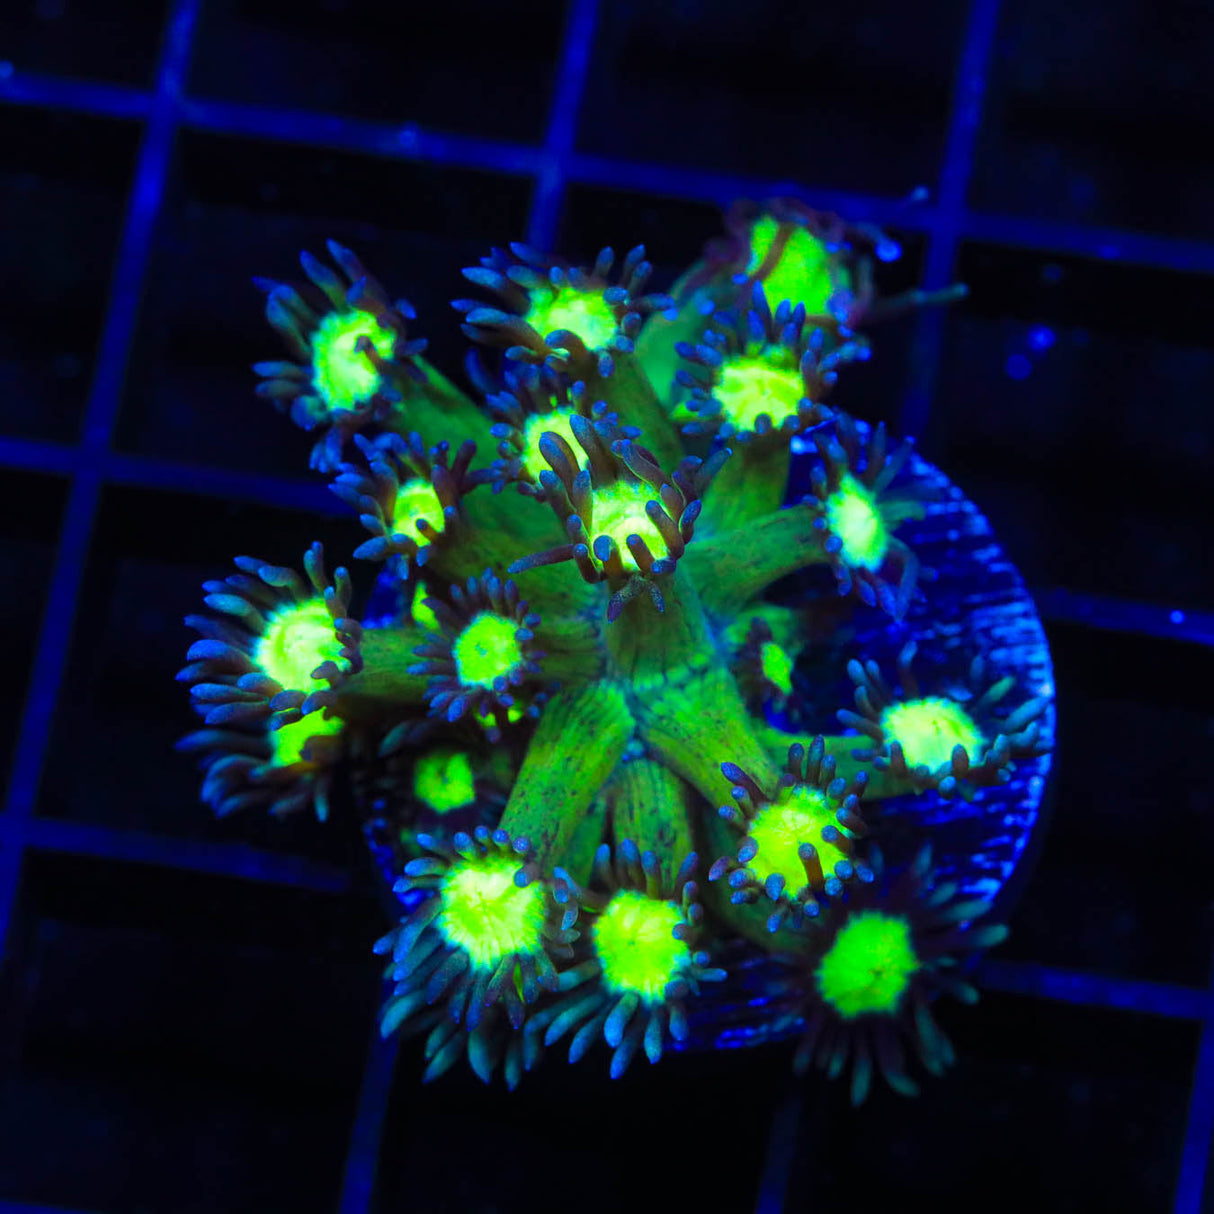 TSA Sparkle Goniopora Coral - Top Shelf Aquatics